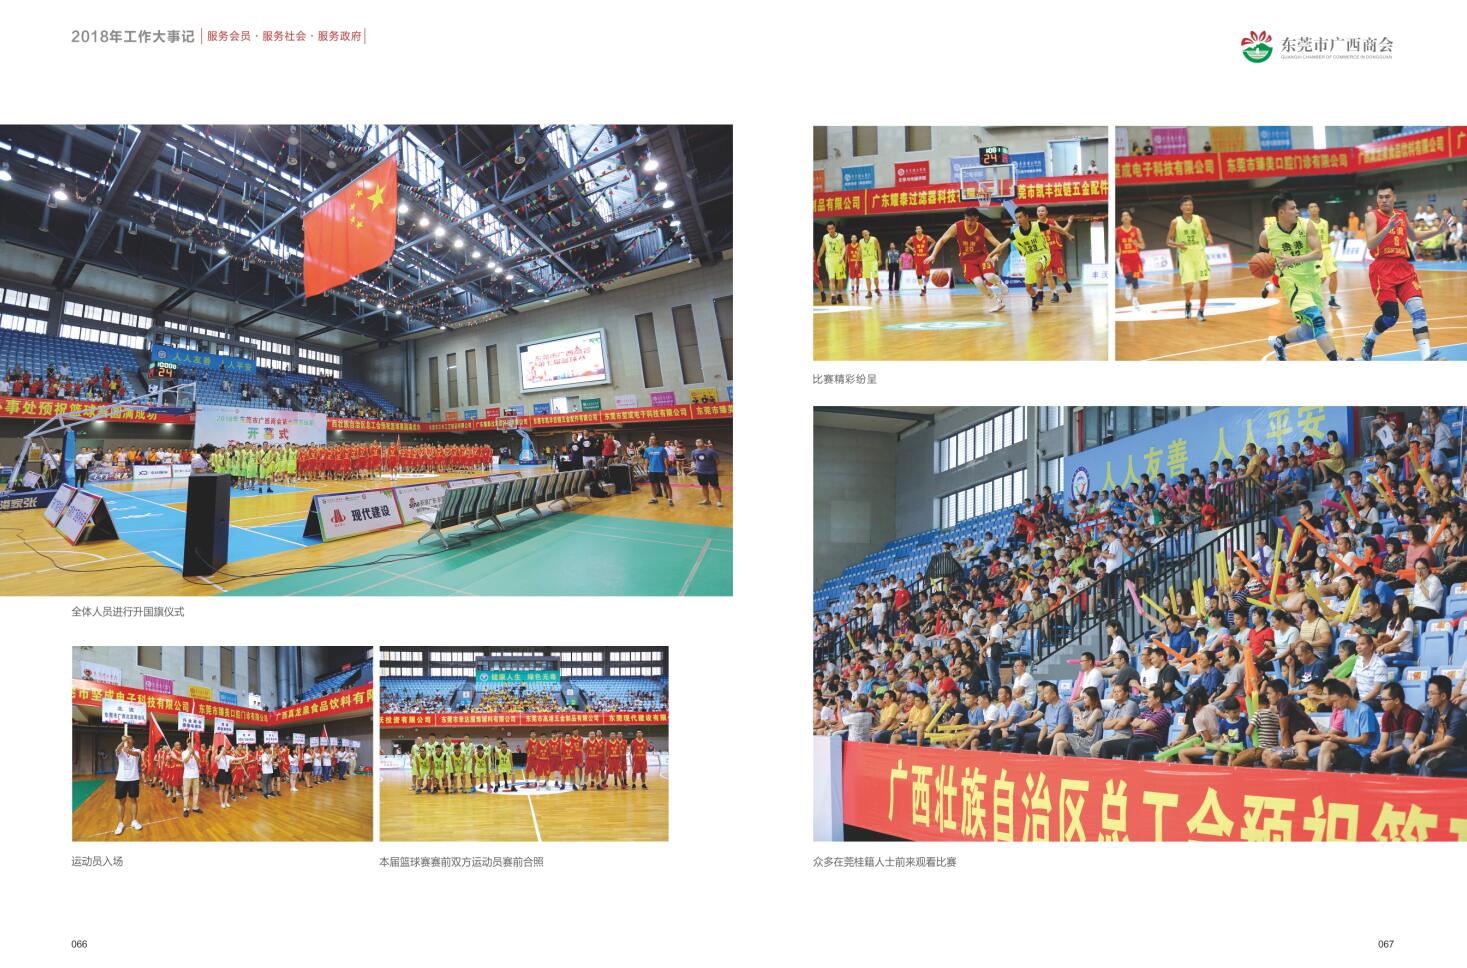 2018年东莞市广西商会第七届篮球赛